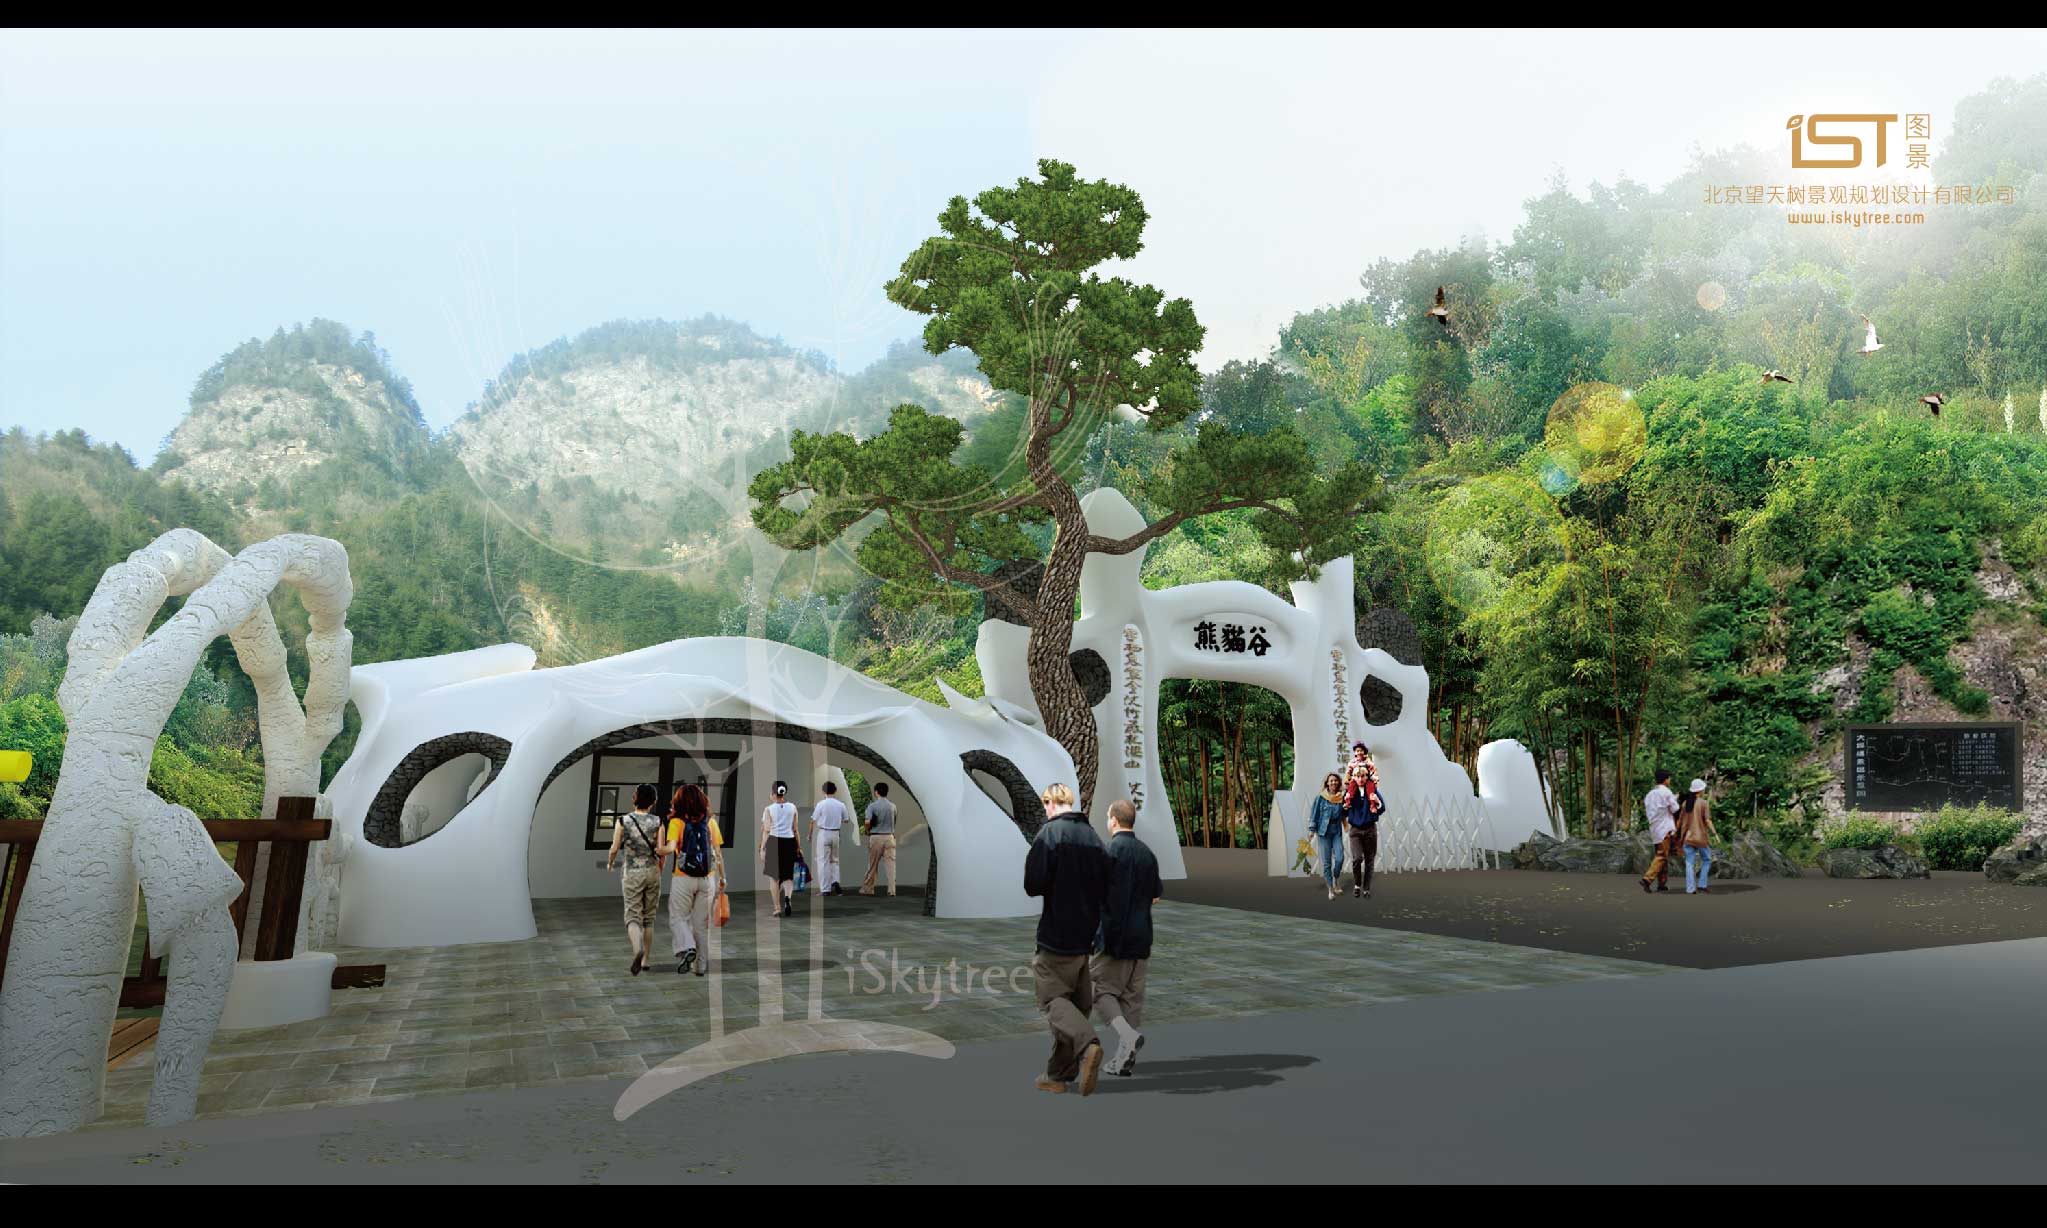 熊猫谷景区主入口大门设计方案效果表现